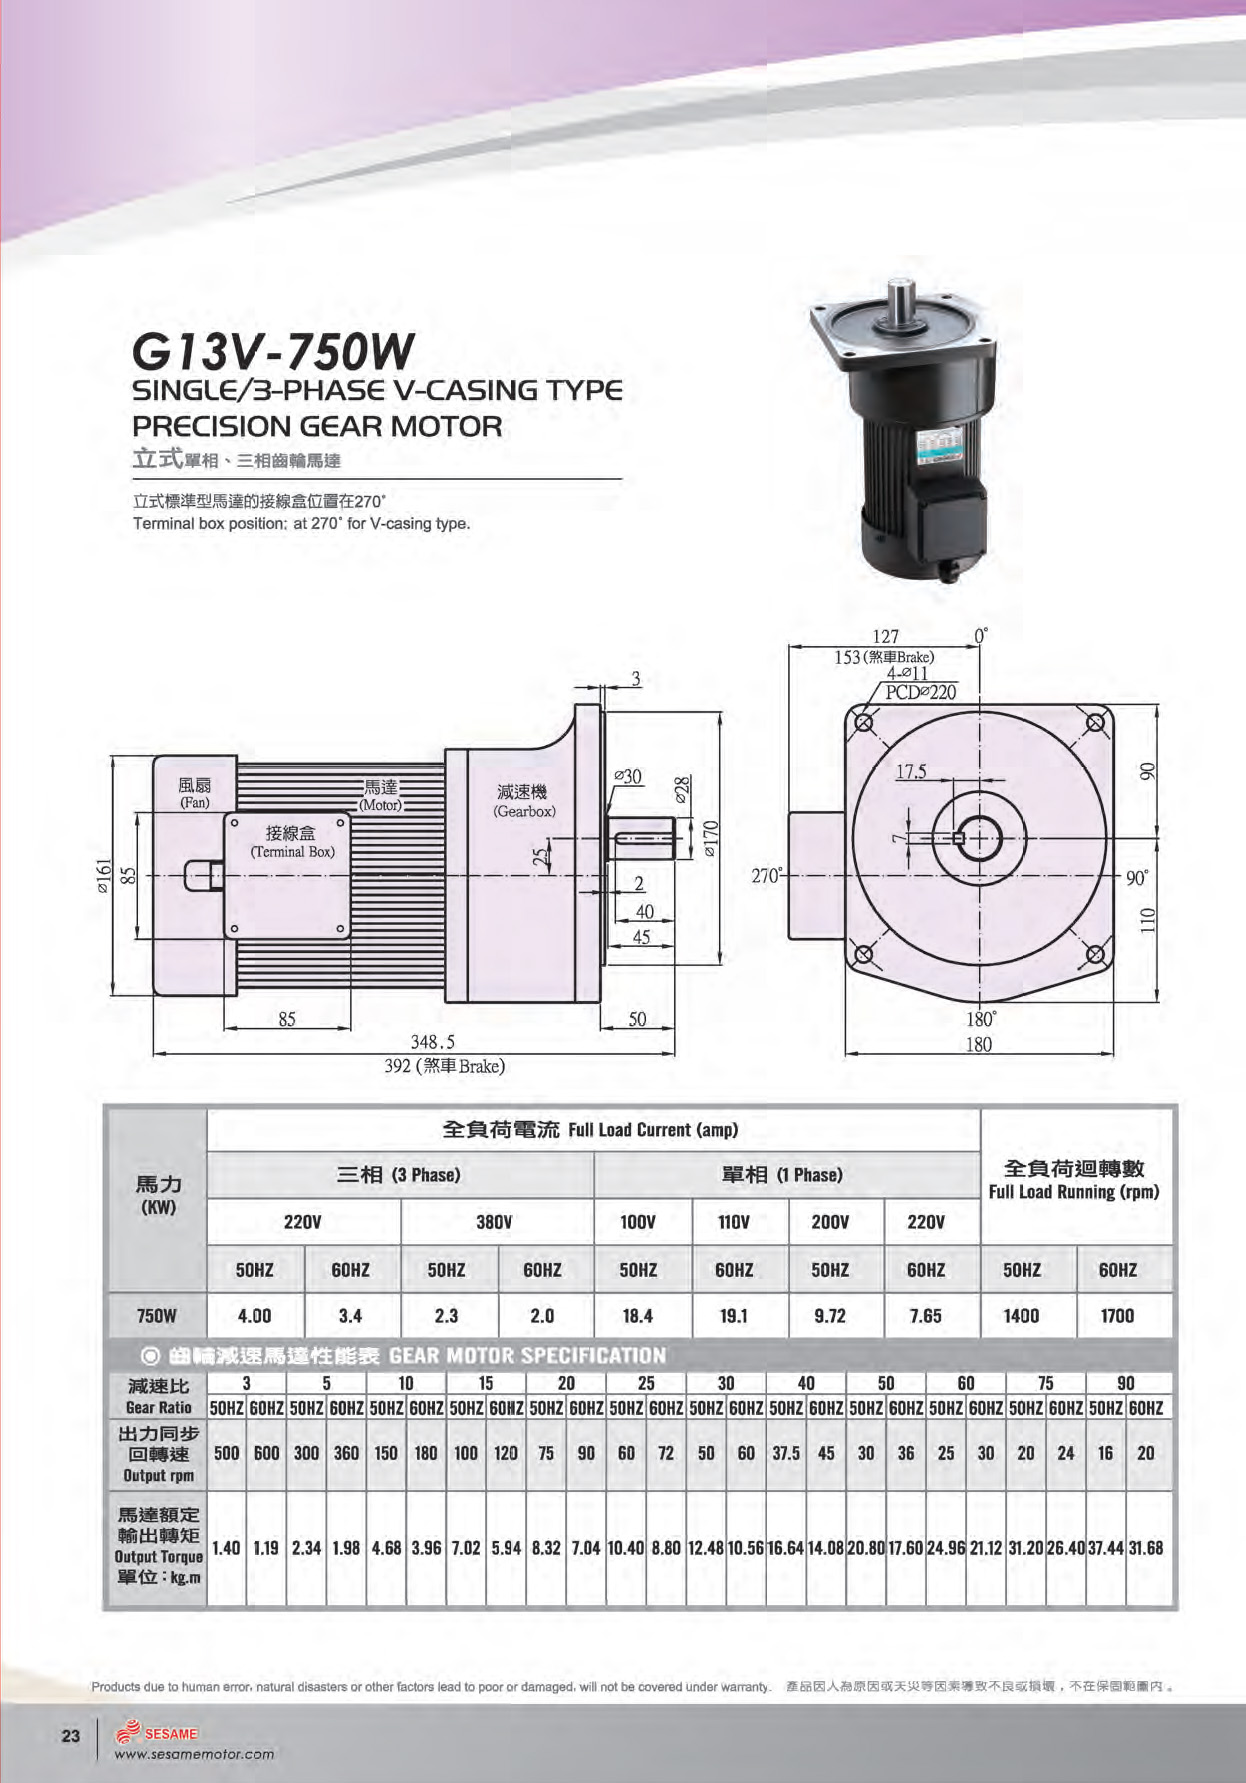 Sesame G11H-200U-90 PRECISION GEAR MOTOR 200W/3PH/230V/460V/4P/Ratio 1:90 